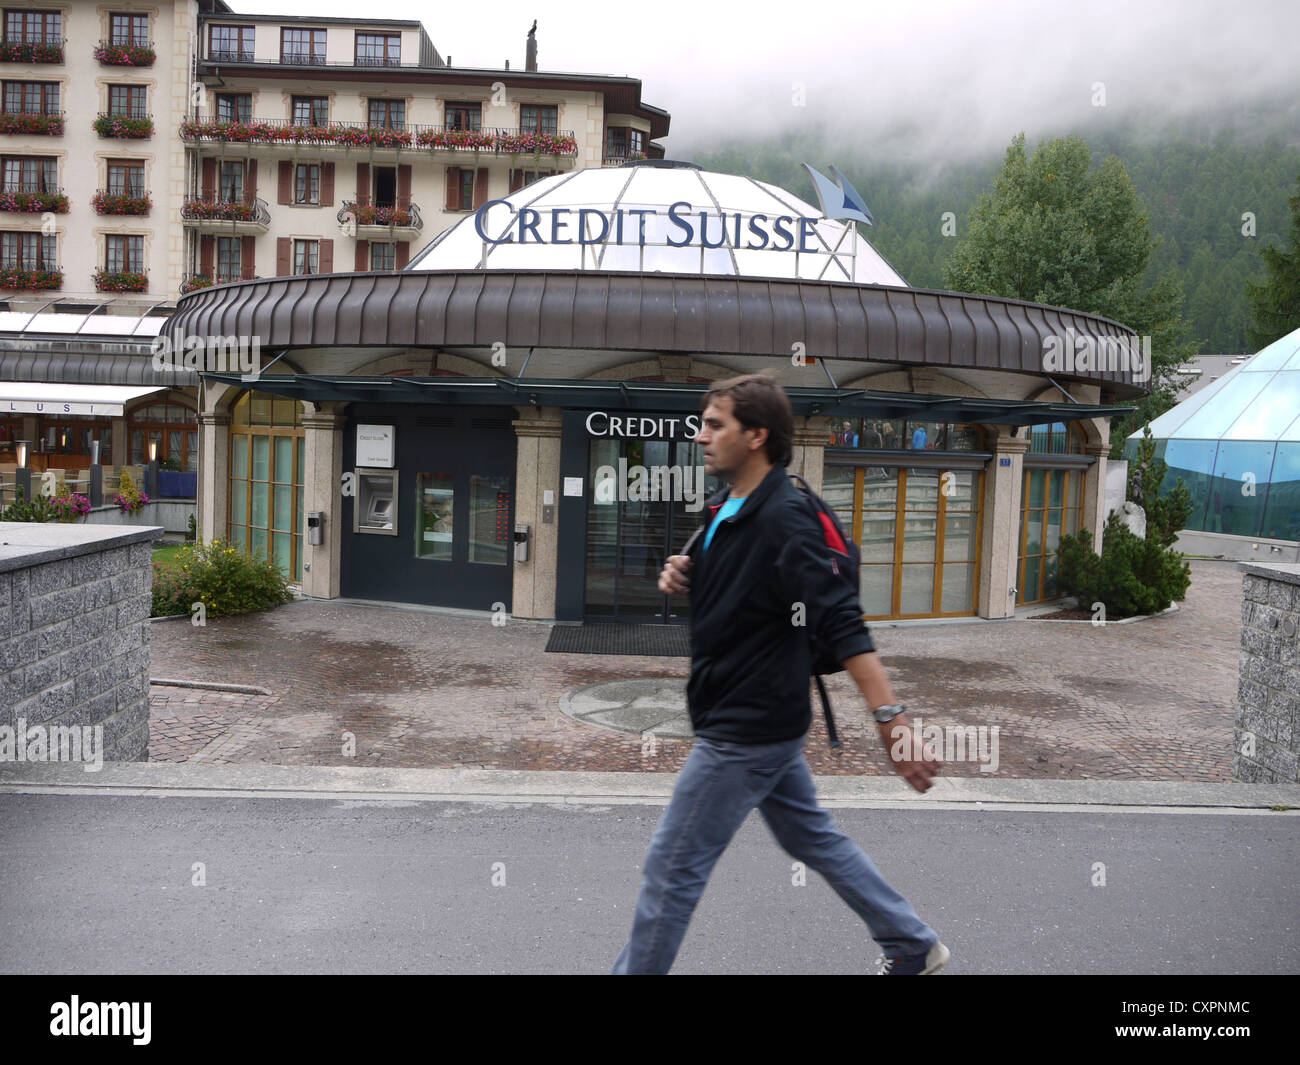 Credit Suisse bank branch Bahnhofstrasse Zermatt, Switzerland Stock Photo